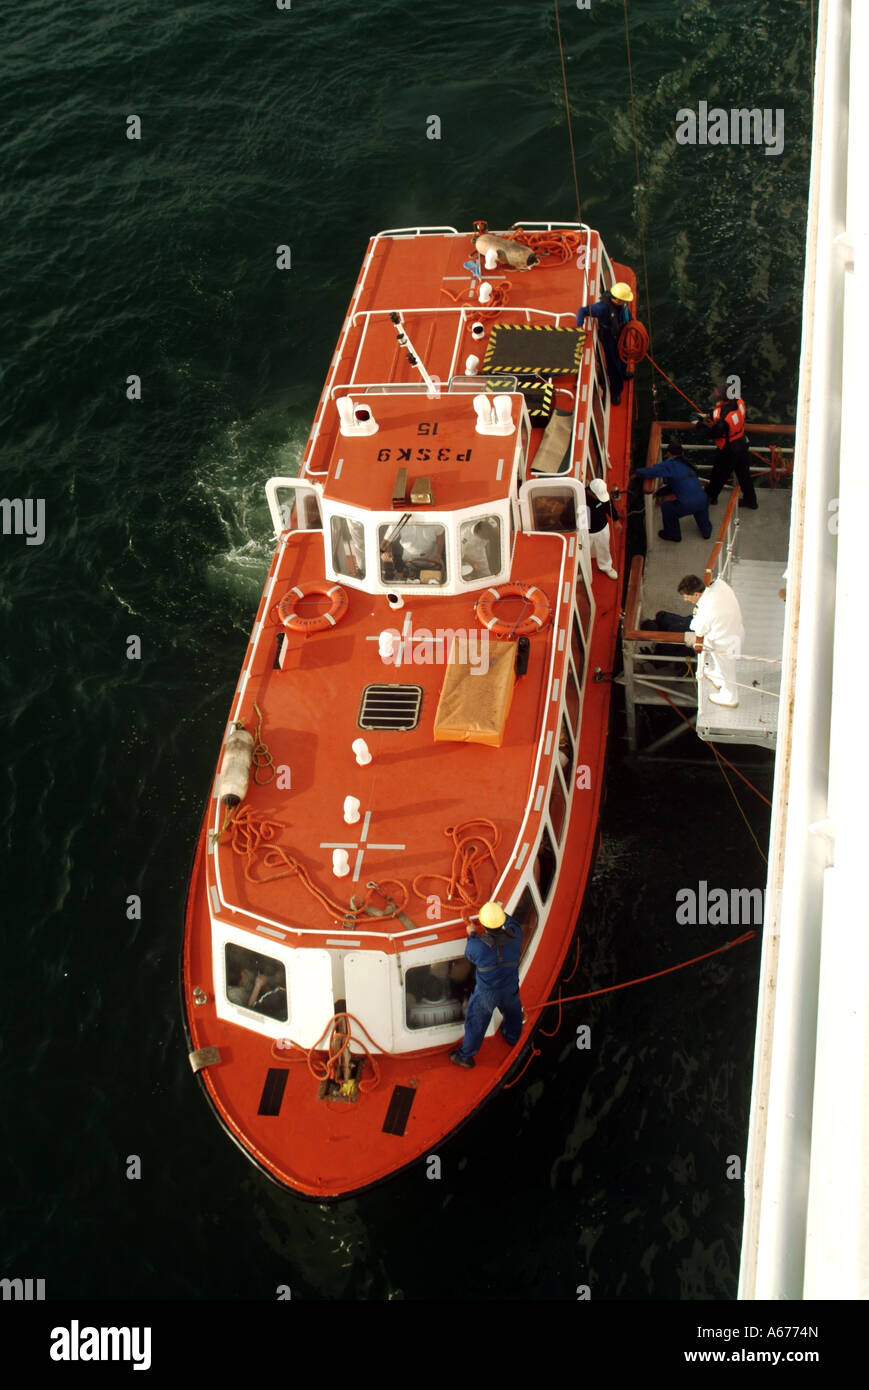 Vue aérienne de sauvetage de l'équipage portant adjudication aux côtés de navires de croisière en mer Ligure pour transporter des passagers pour shore excursion à La Spezia Italie Banque D'Images